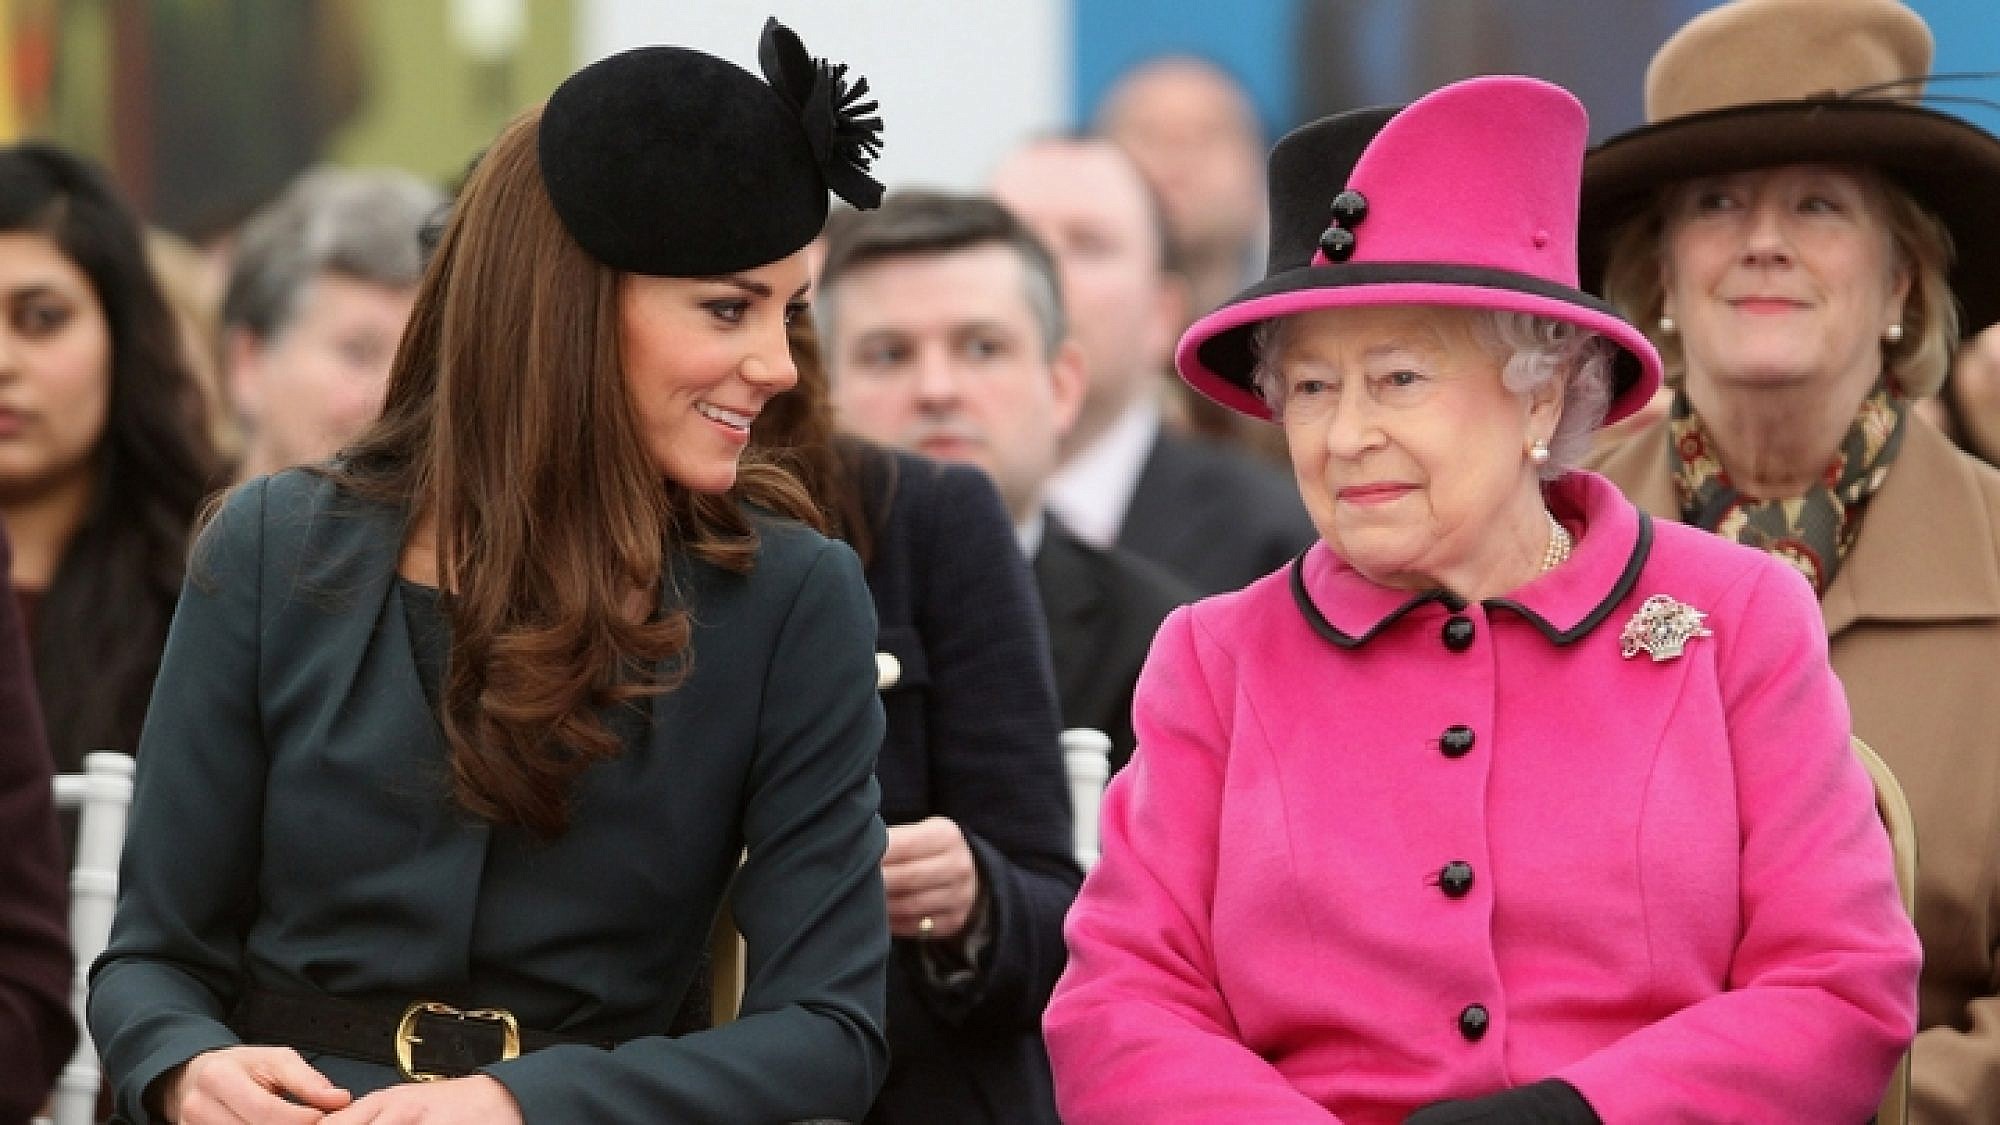 "הסתכלת בסטורי של מייגן?": קייט מידלטון והמלכה אליזבת | צילום: Gettyimages